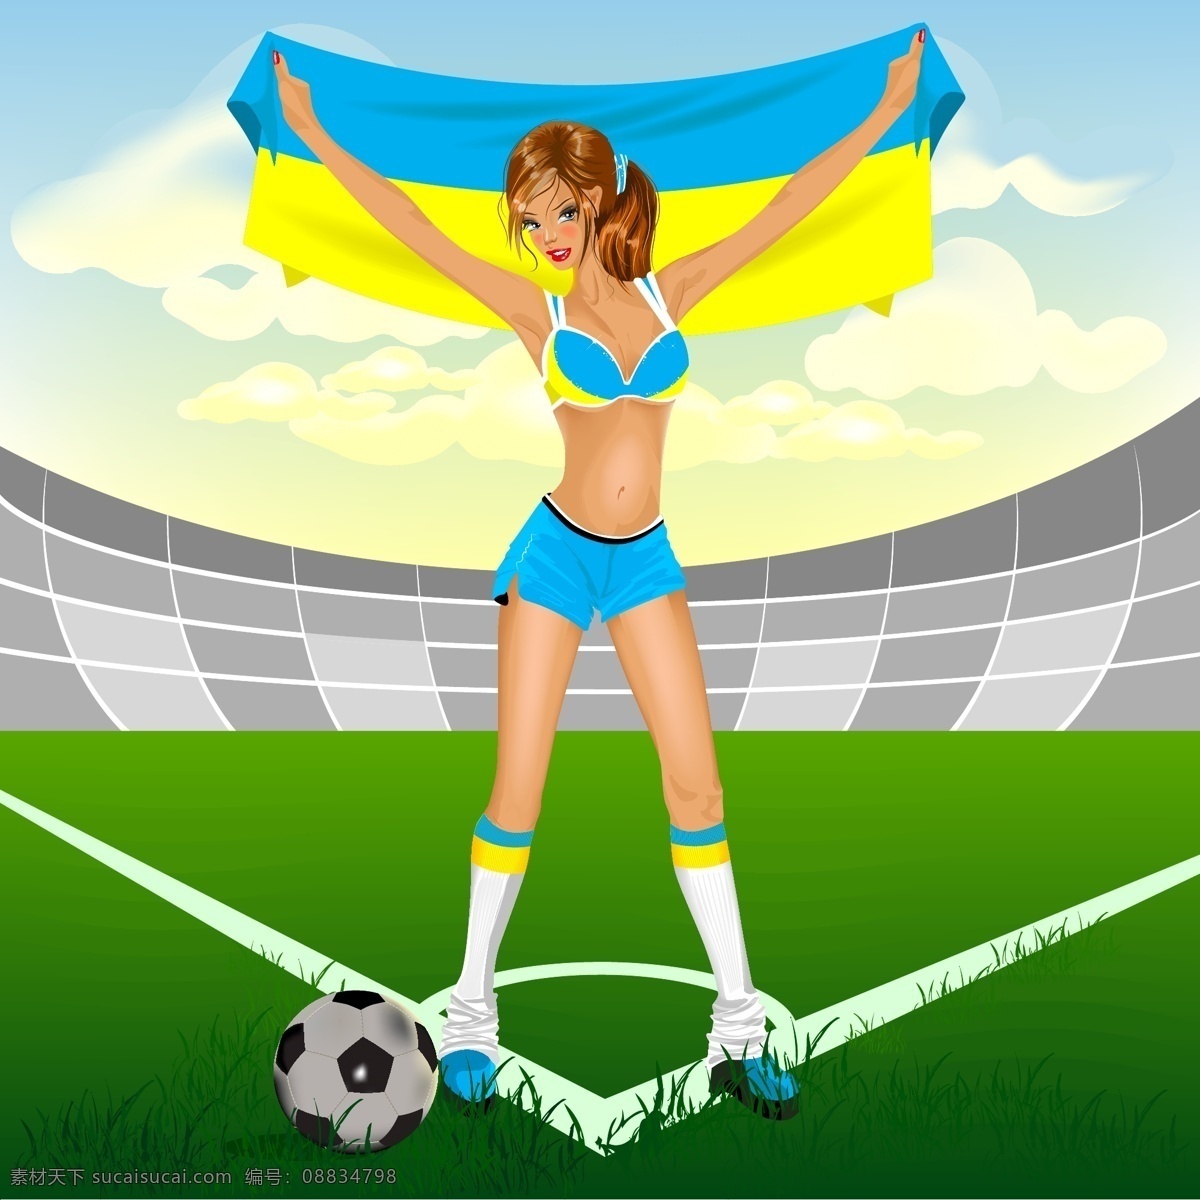 乌克兰 足球 女孩 免费 矢量 2012 插图 风扇 观众 国旗 竞争 女 欧洲 漂亮的 美丽的 庆祝 2012欧元 事件 好玩的 体育 体育场 球队 均匀 向量 其他女人 矢量图 其他矢量图